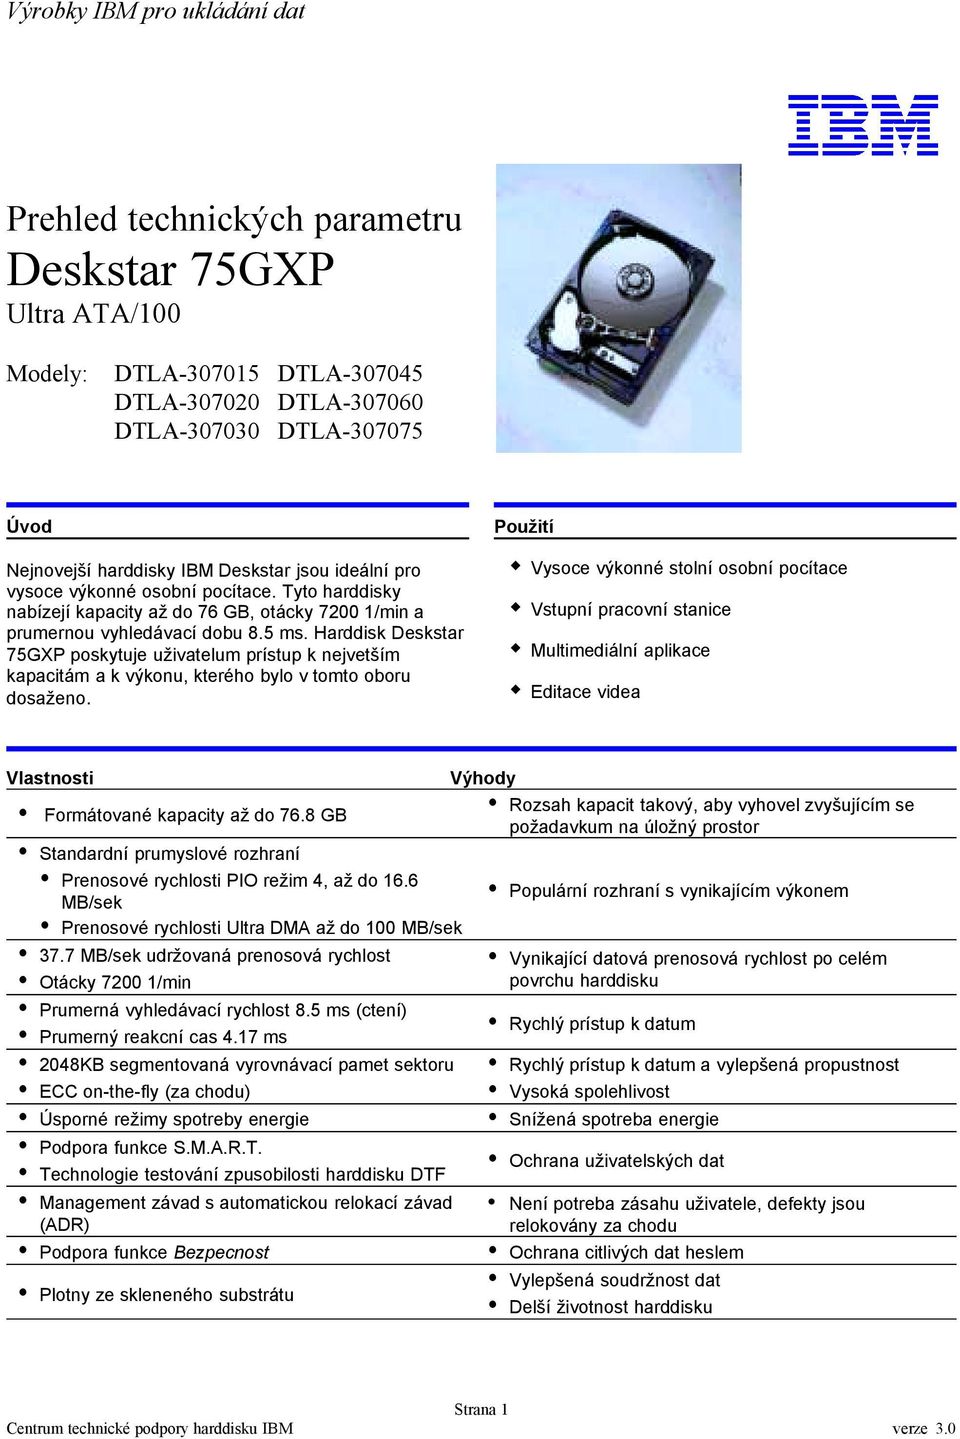 Harddisk Deskstar 75GXP poskytuje uživatelum prístup k nejvetším kapacitám a k výkonu, kterého bylo v tomto oboru dosaženo.